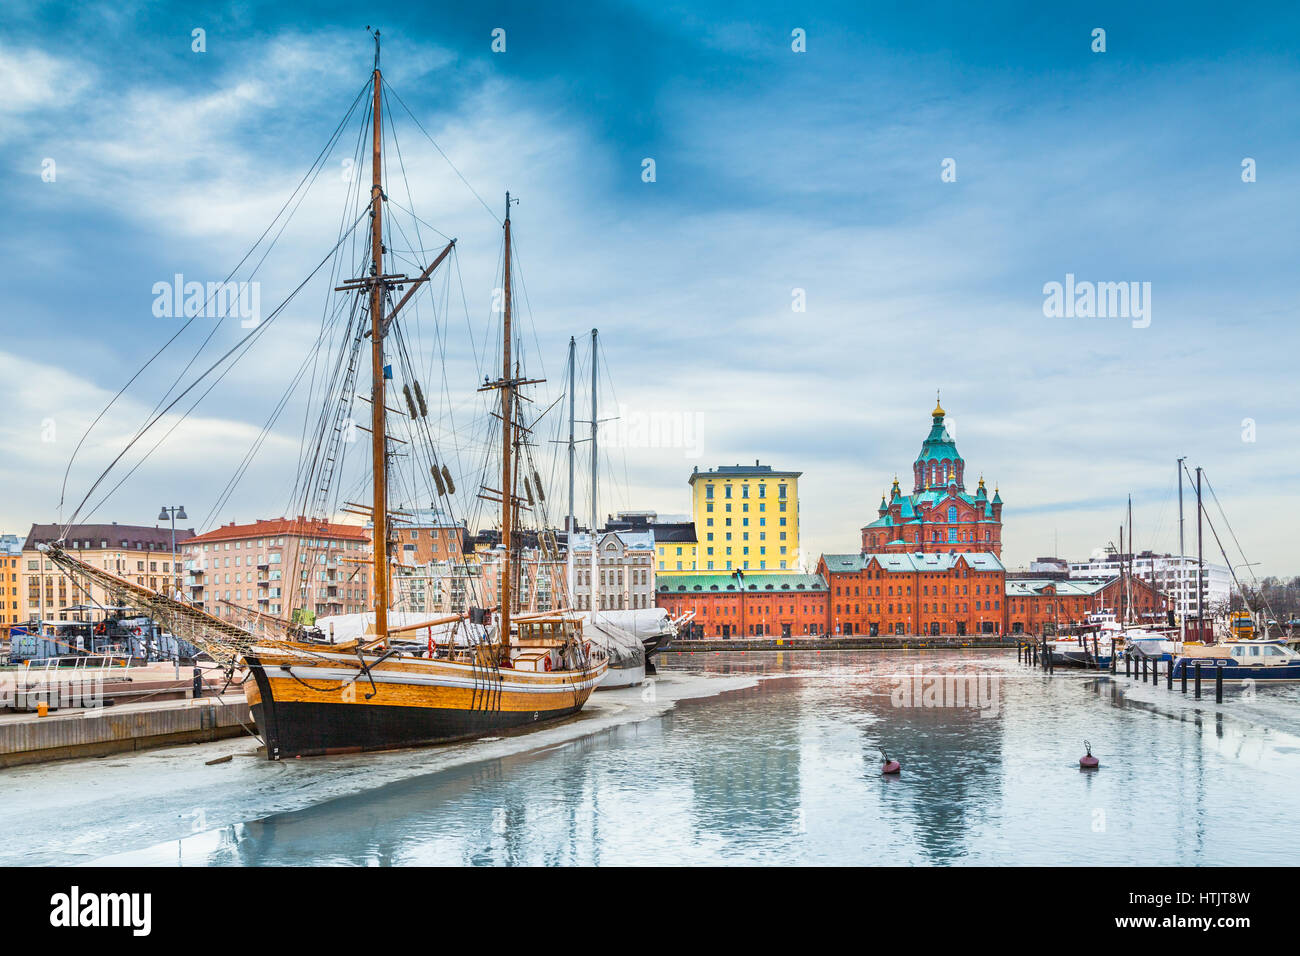 Schöne Aussicht auf die alte Stadt von Helsinki mit berühmten Uspenski östliche orthodoxe Kathedrale und alten Hafen im Stadtteil von Helsinki Katajanokka Stockfoto